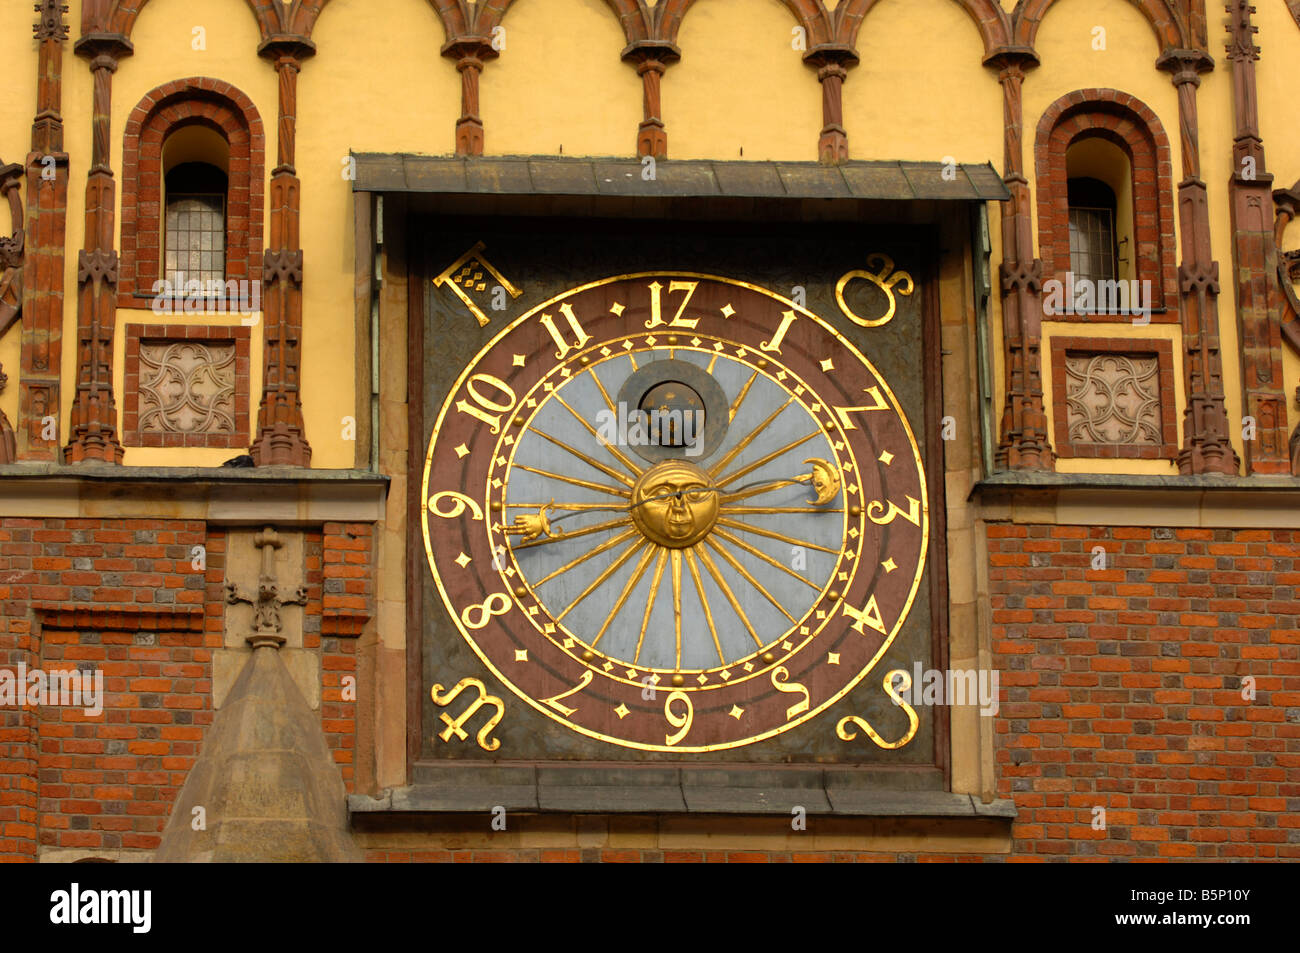 Astronomische Uhr am Rathaus, Platz Rynek, Wroclaw, Polen Stockfoto